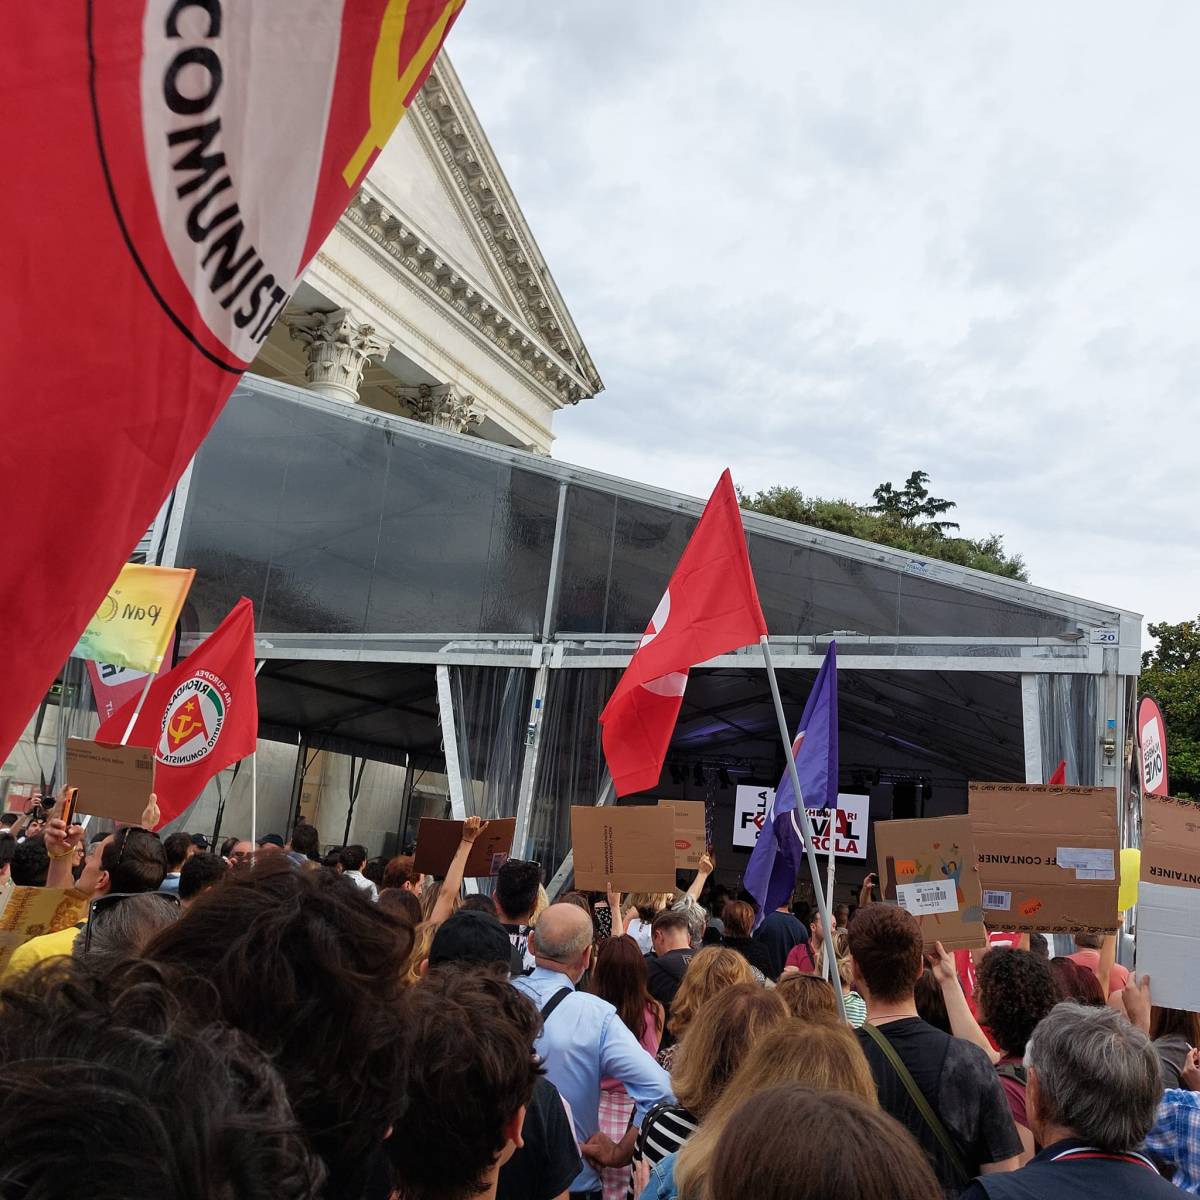 La contestazione durante l'intervento di Pillon da parte della sinistra